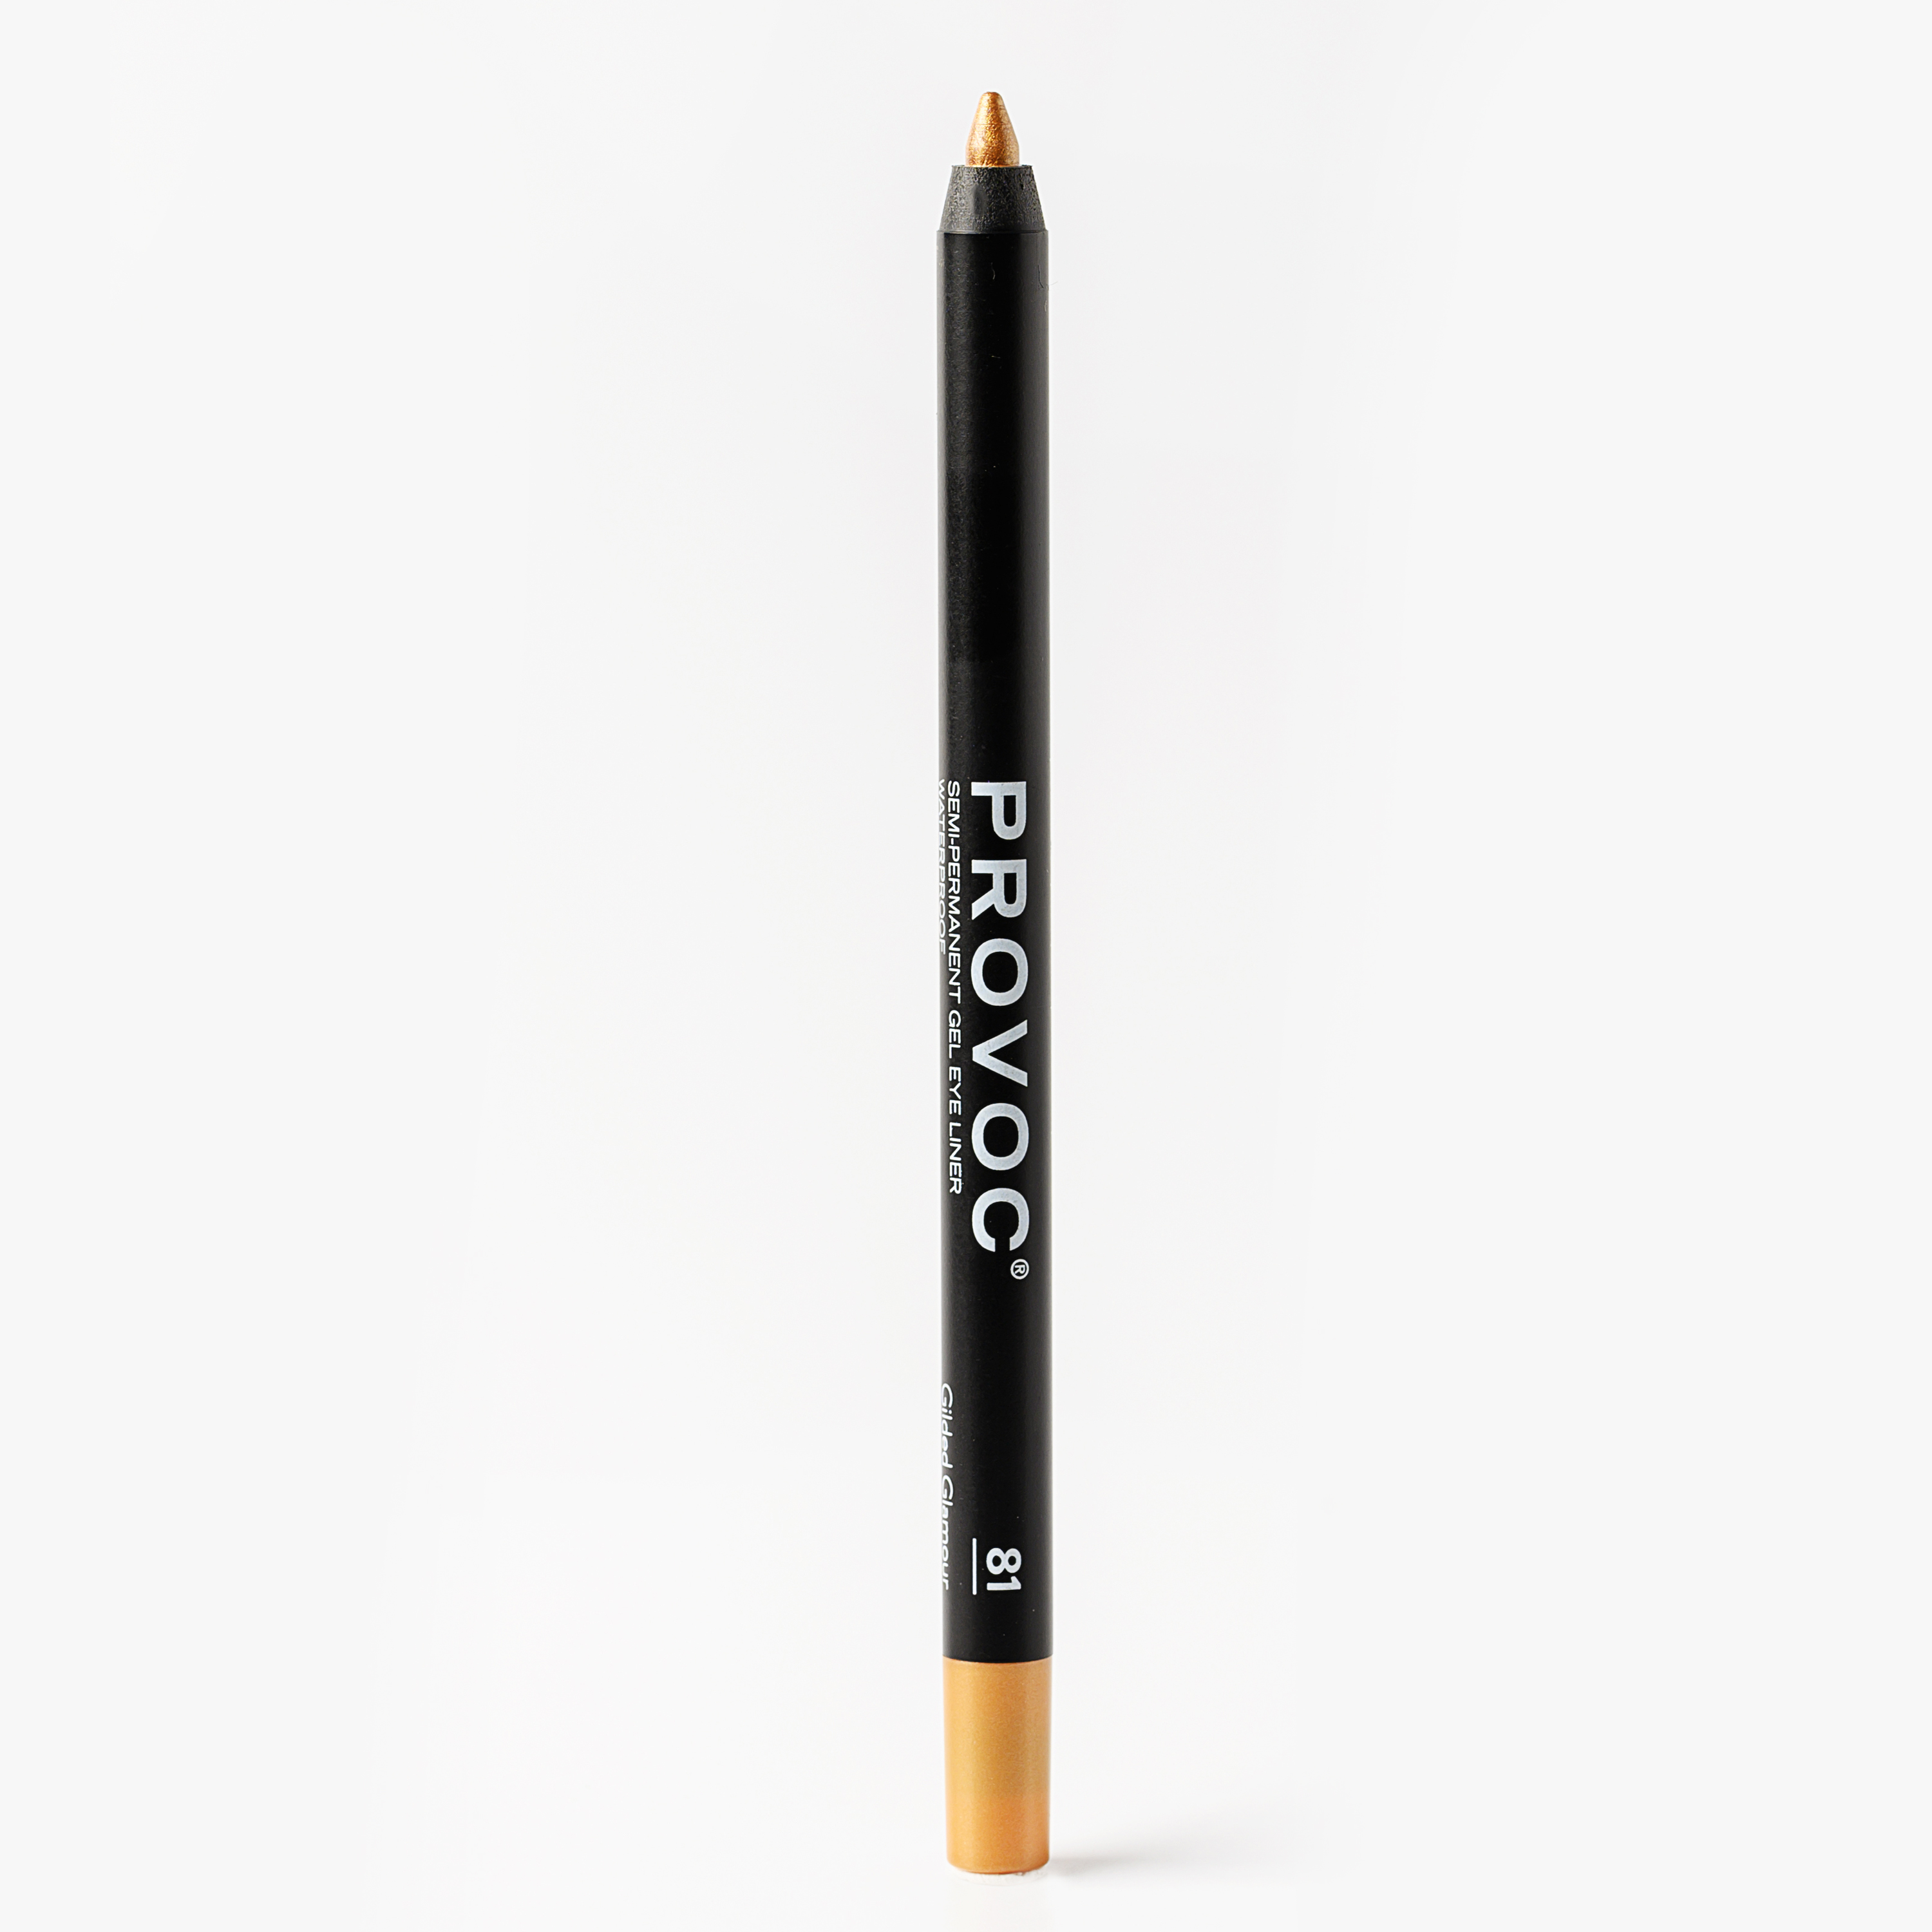 Гелевый карандаш для глаз Provoc Gel Eye Liner 81 Gilded Glamour (золотистый) 1,2 г карандаш для глаз lancome drama liqui pencil 24h гелевый 01 cafe noir 1 2 г